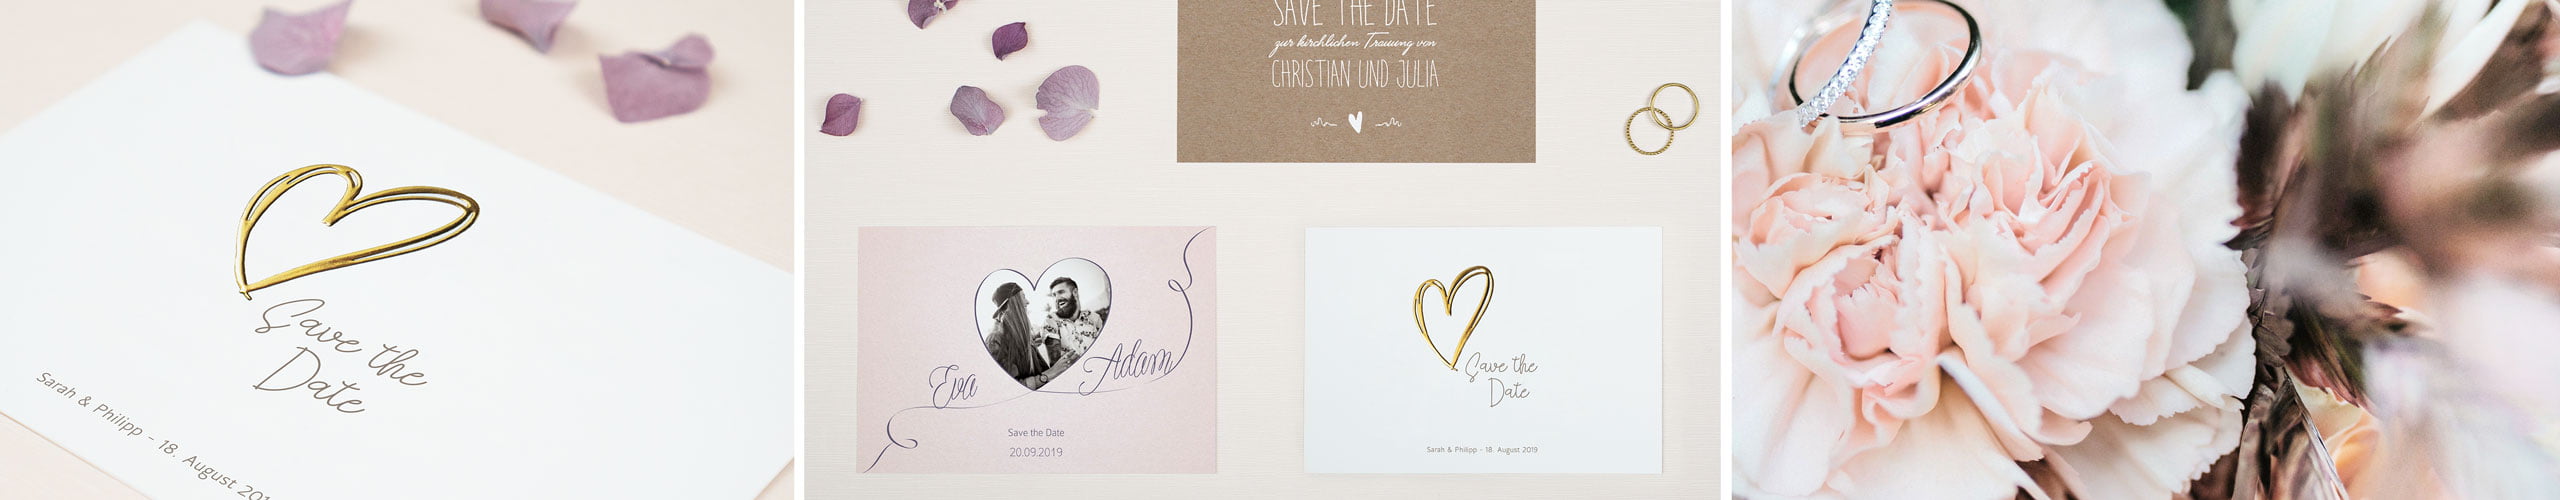 Save The Date Karten Fur Ihre Hochzeit